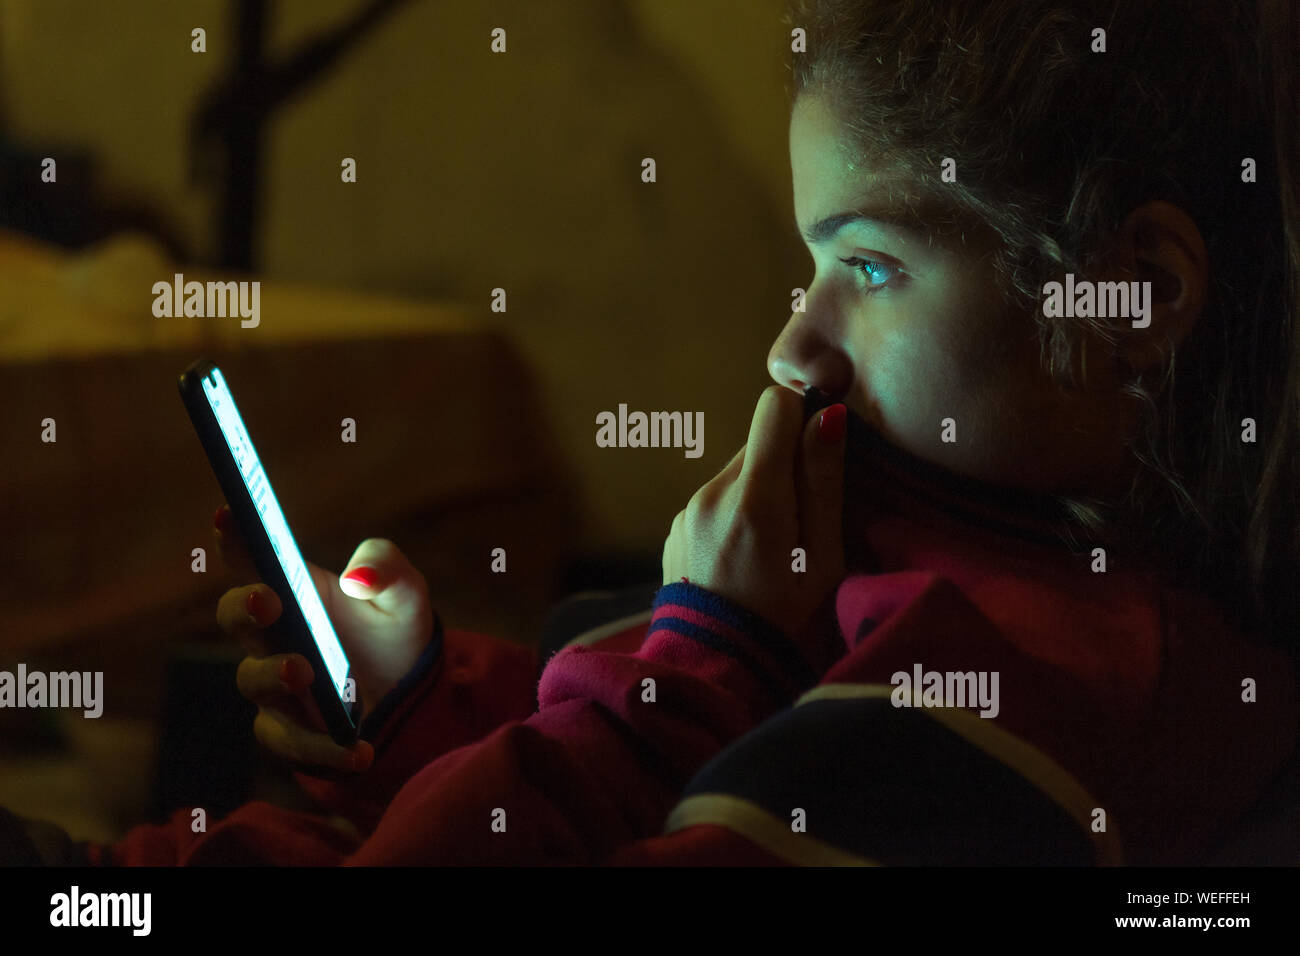 Luz del teléfono móvil iluminando el rostro de una adolescente navegando Foto de stock